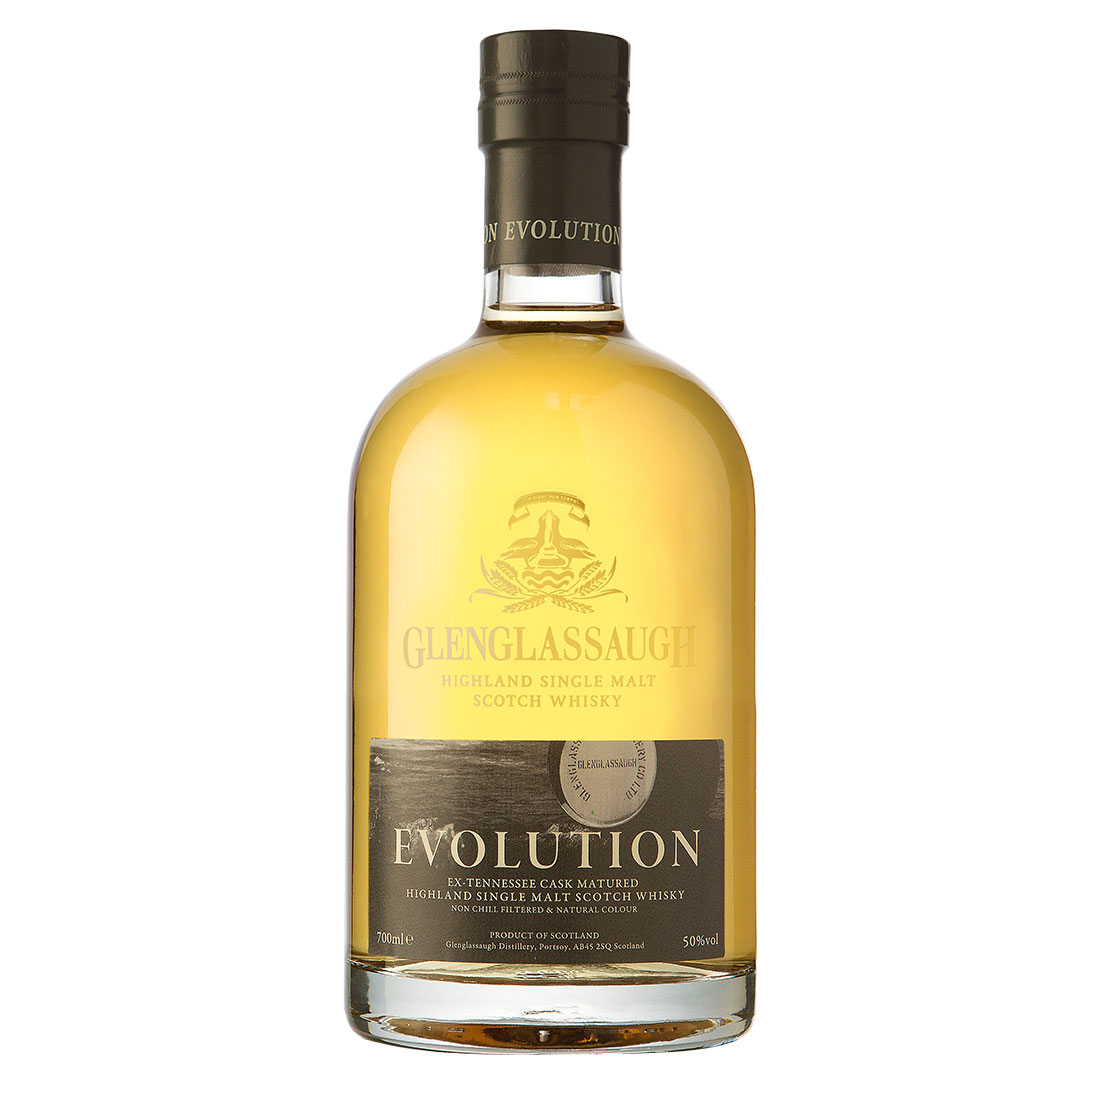 LB_Bottle-Glenglassaugh-Evolution